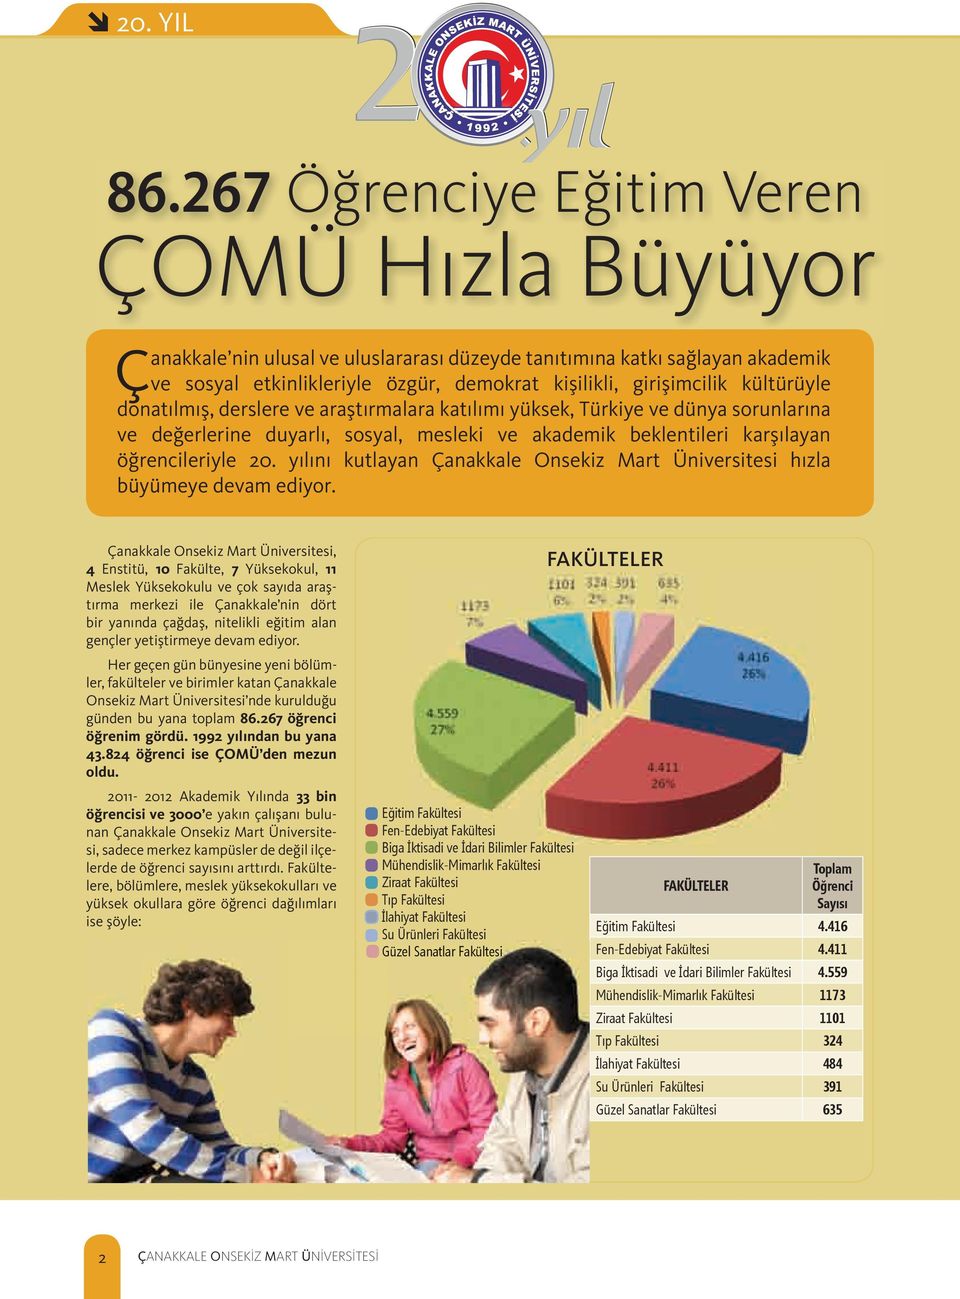 kültürüyle donatılmış, derslere ve araştırmalara katılımı yüksek, Türkiye ve dünya sorunlarına ve değerlerine duyarlı, sosyal, mesleki ve akademik beklentileri karşılayan öğrencileriyle 20.